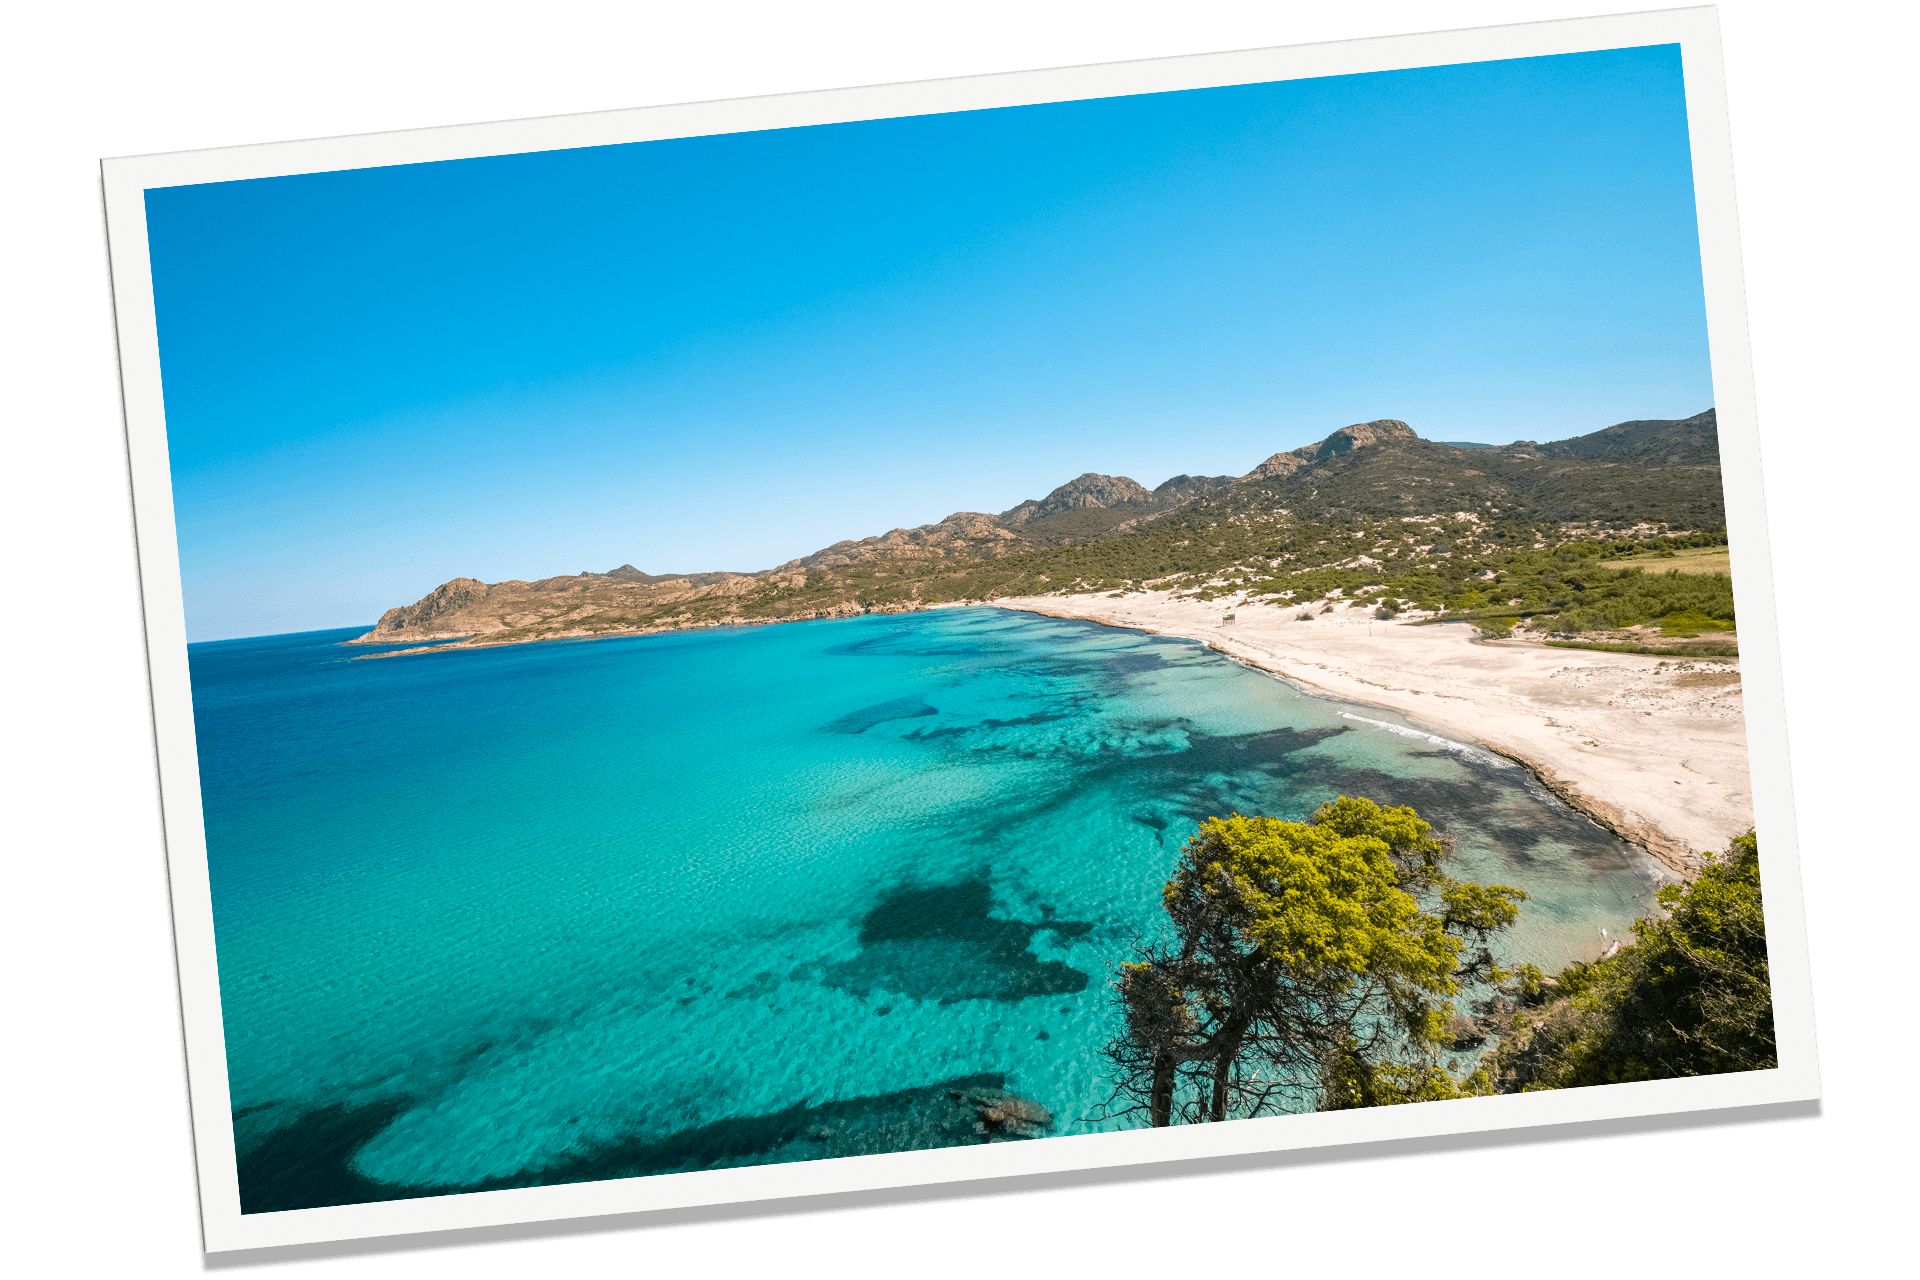 Corsica Dream